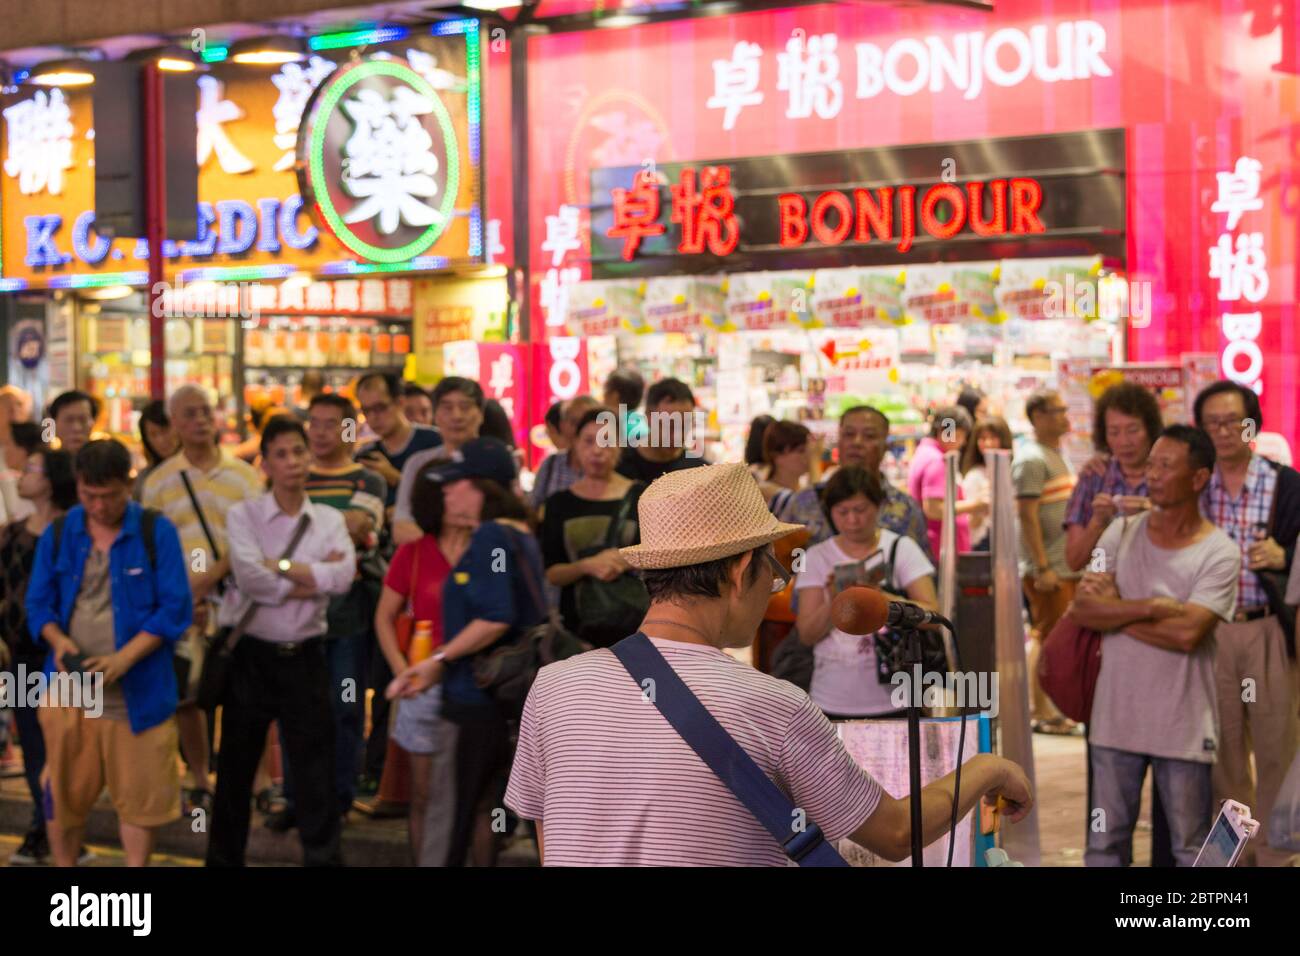 Hong Kong / China - July 26th 2015: Crowd listening to street musician performing in Kowloon, Hong Kong Stock Photo